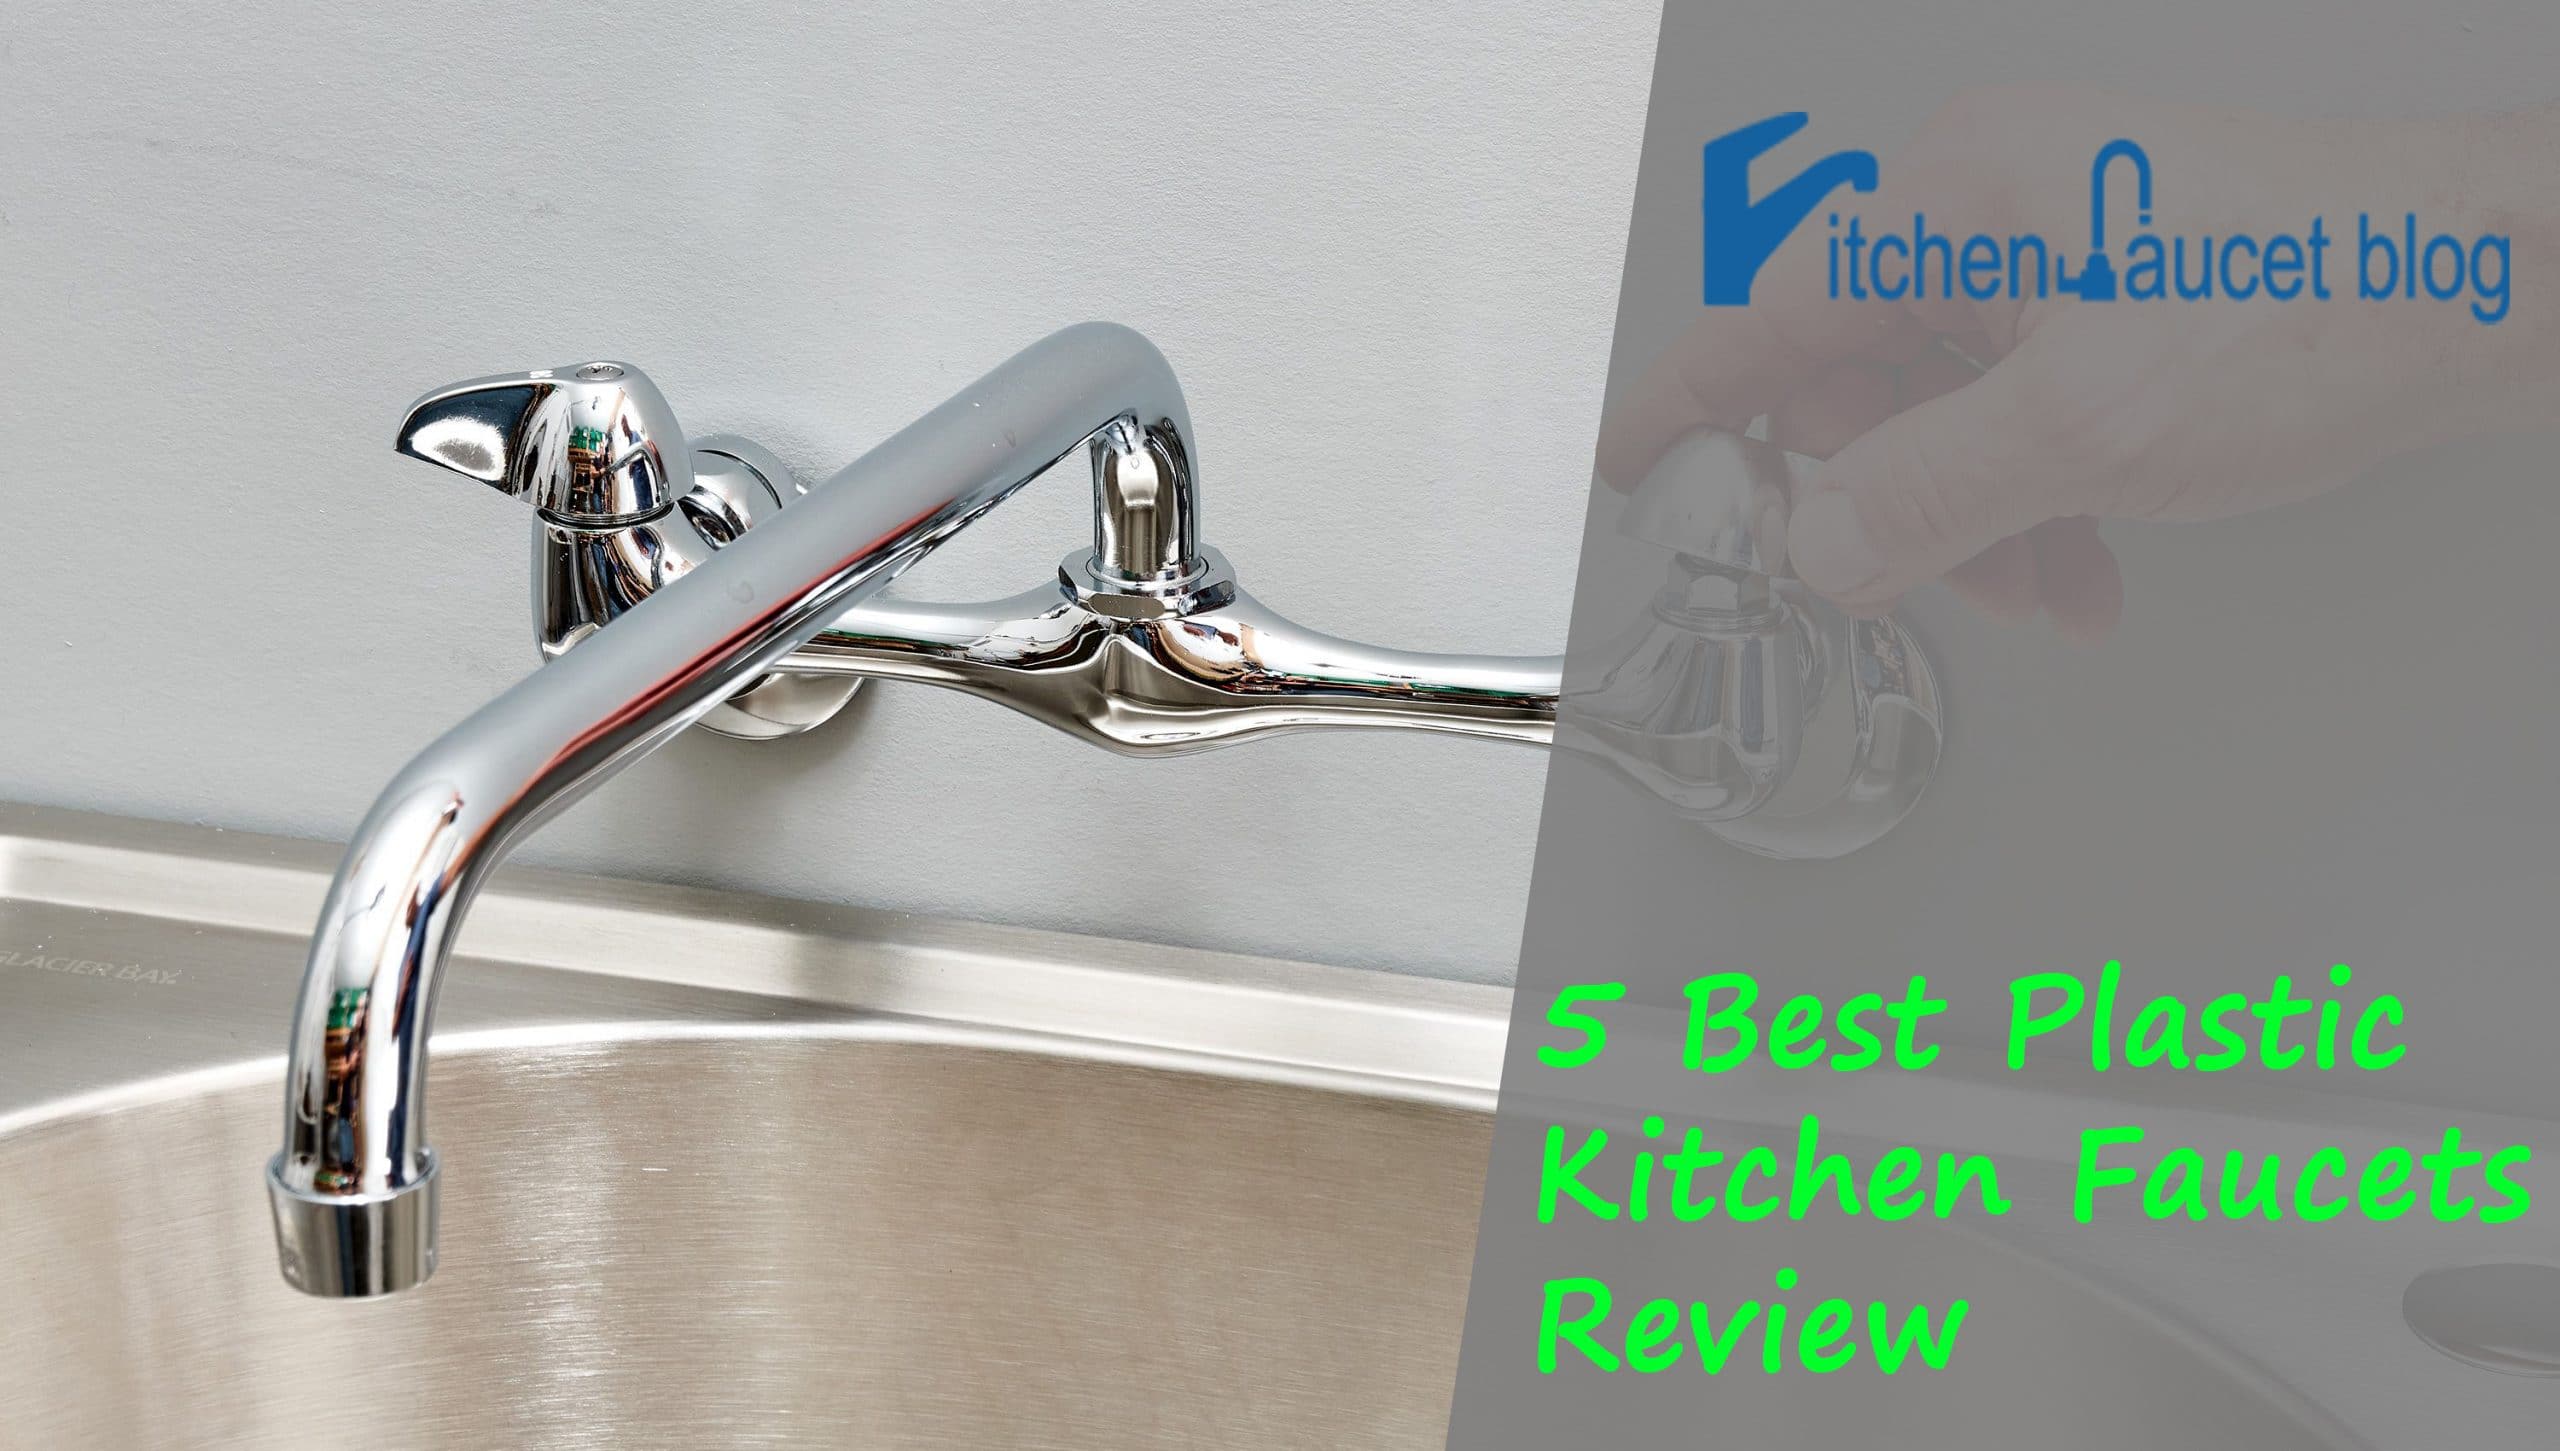 5 Best Plastic Kitchen Faucets Review